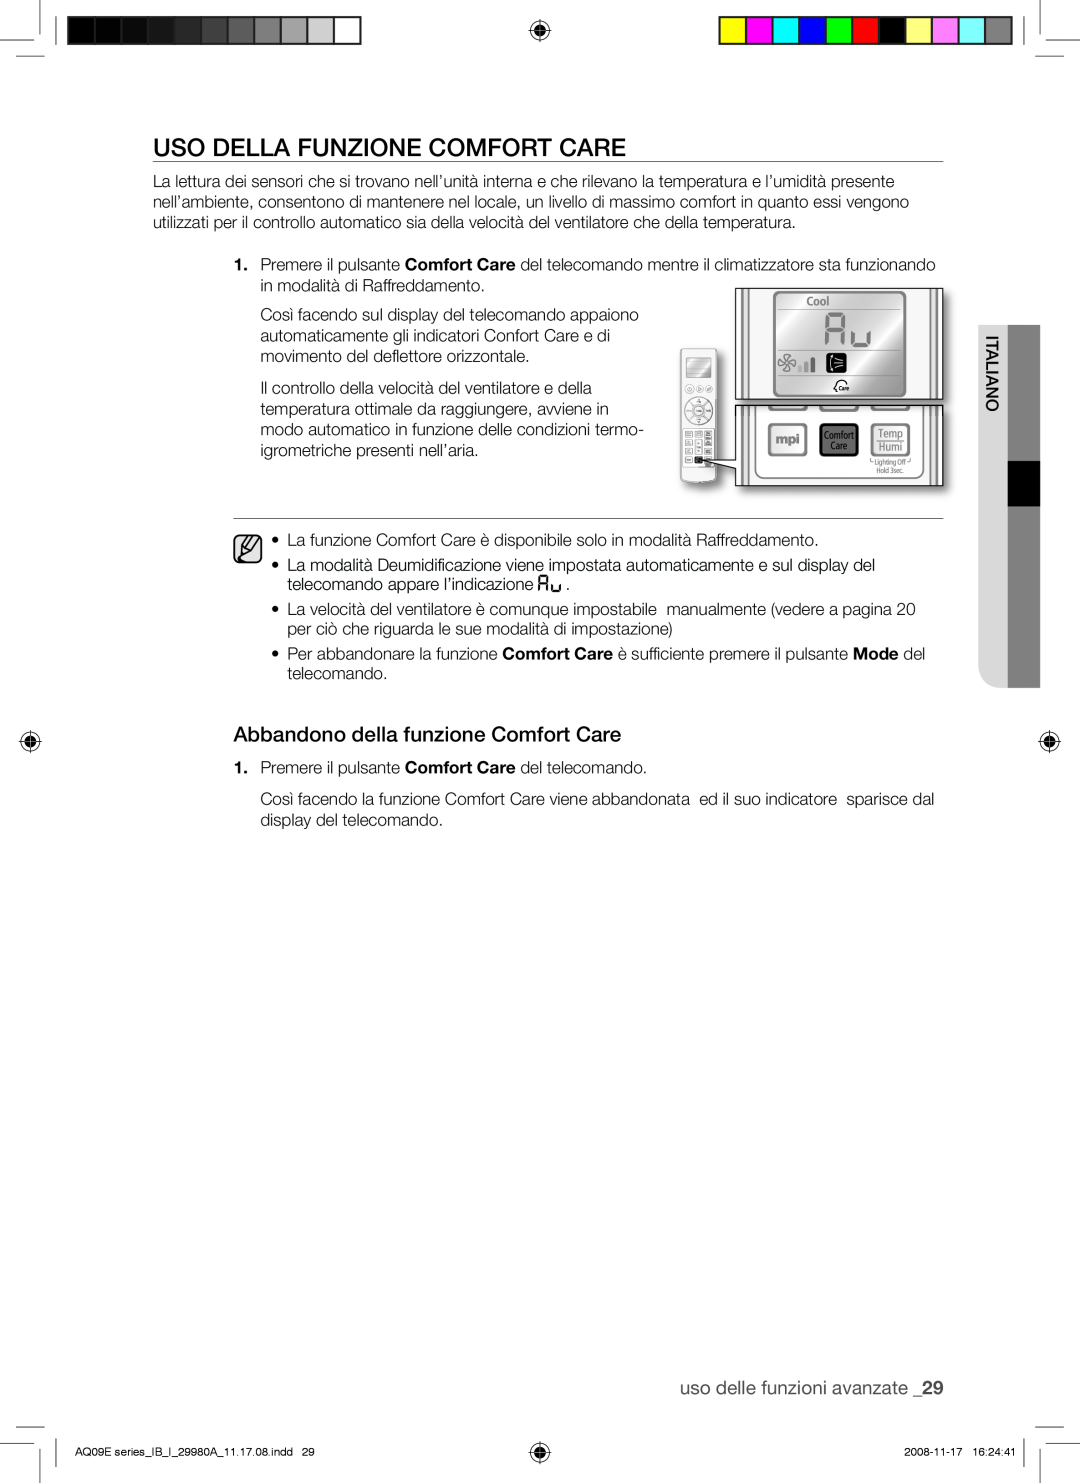 Samsung AQV12EWAX Uso Della Funzione Comfort Care, Abbandono della funzione Comfort Care, uso delle funzioni avanzate 